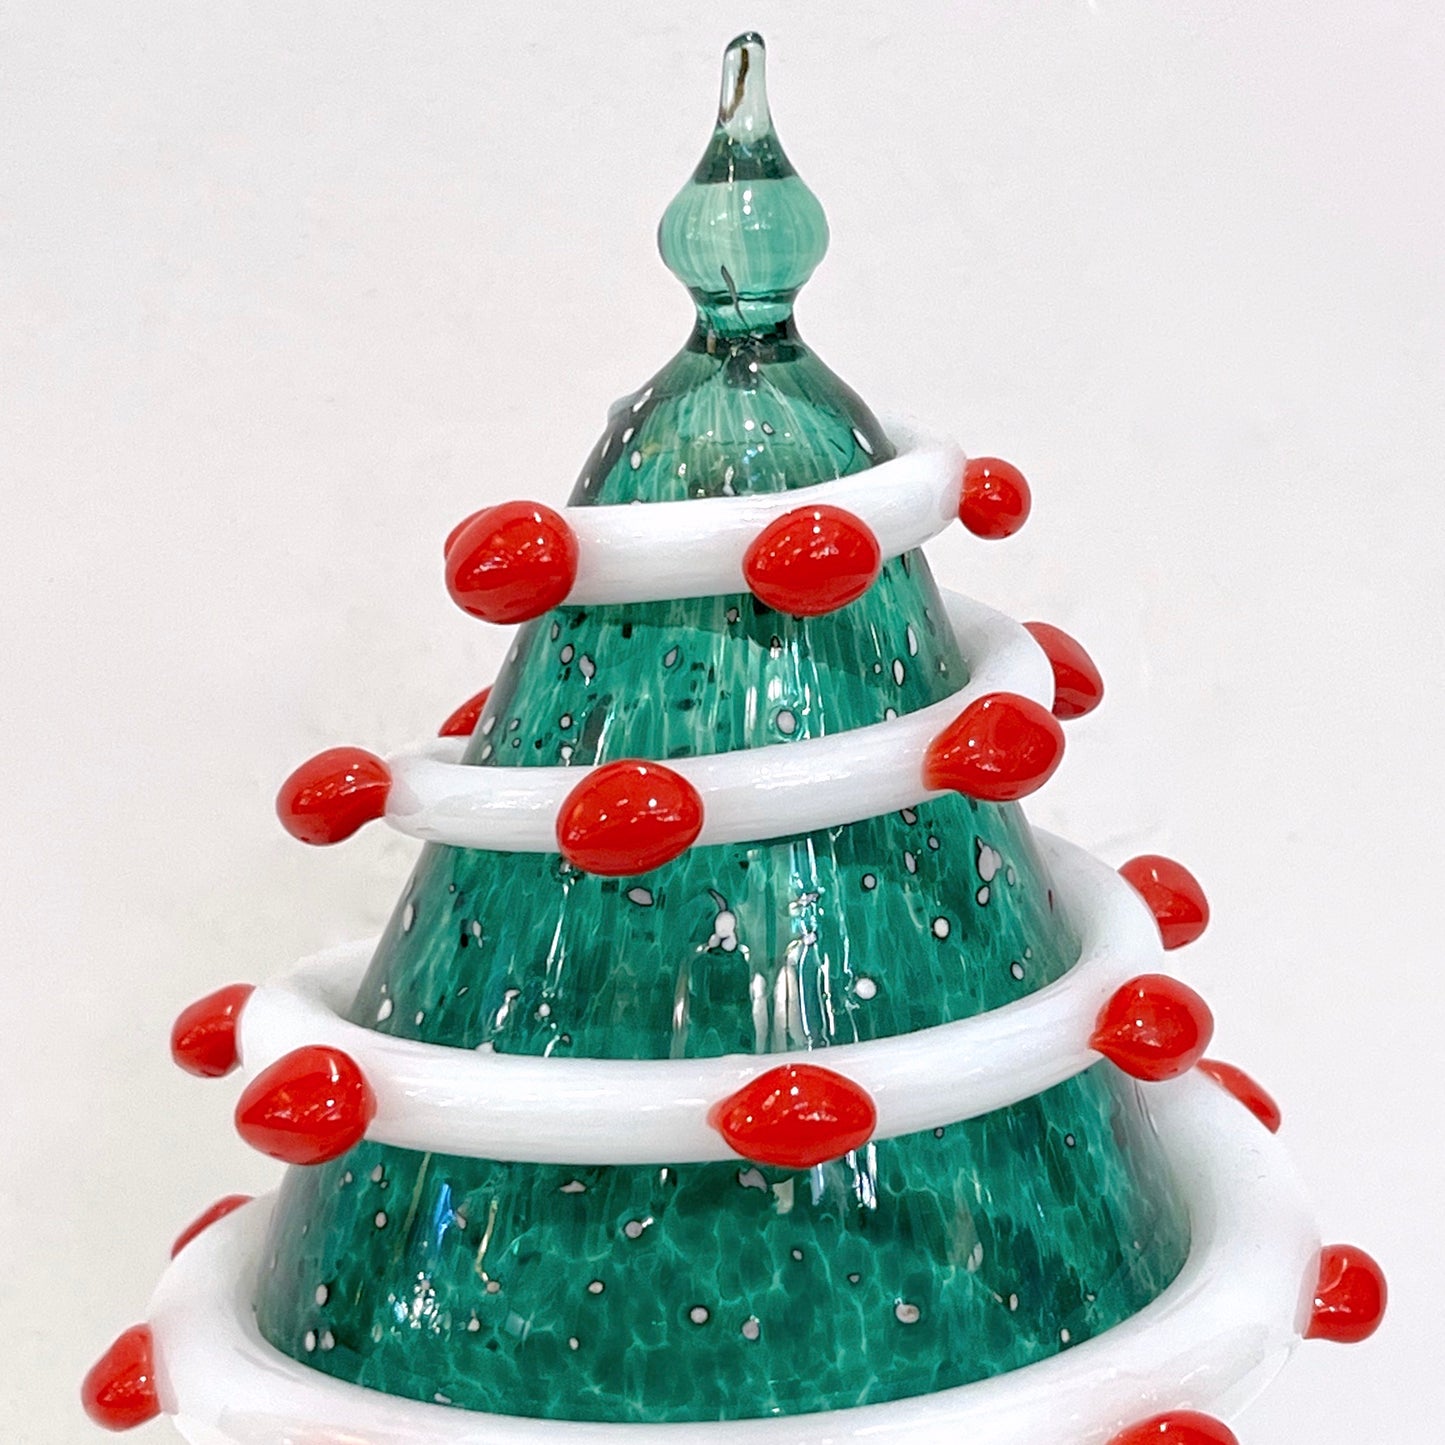 Bespoke Italian Modern Green White Murano Swirl Glass Christmas Tree Sculpture